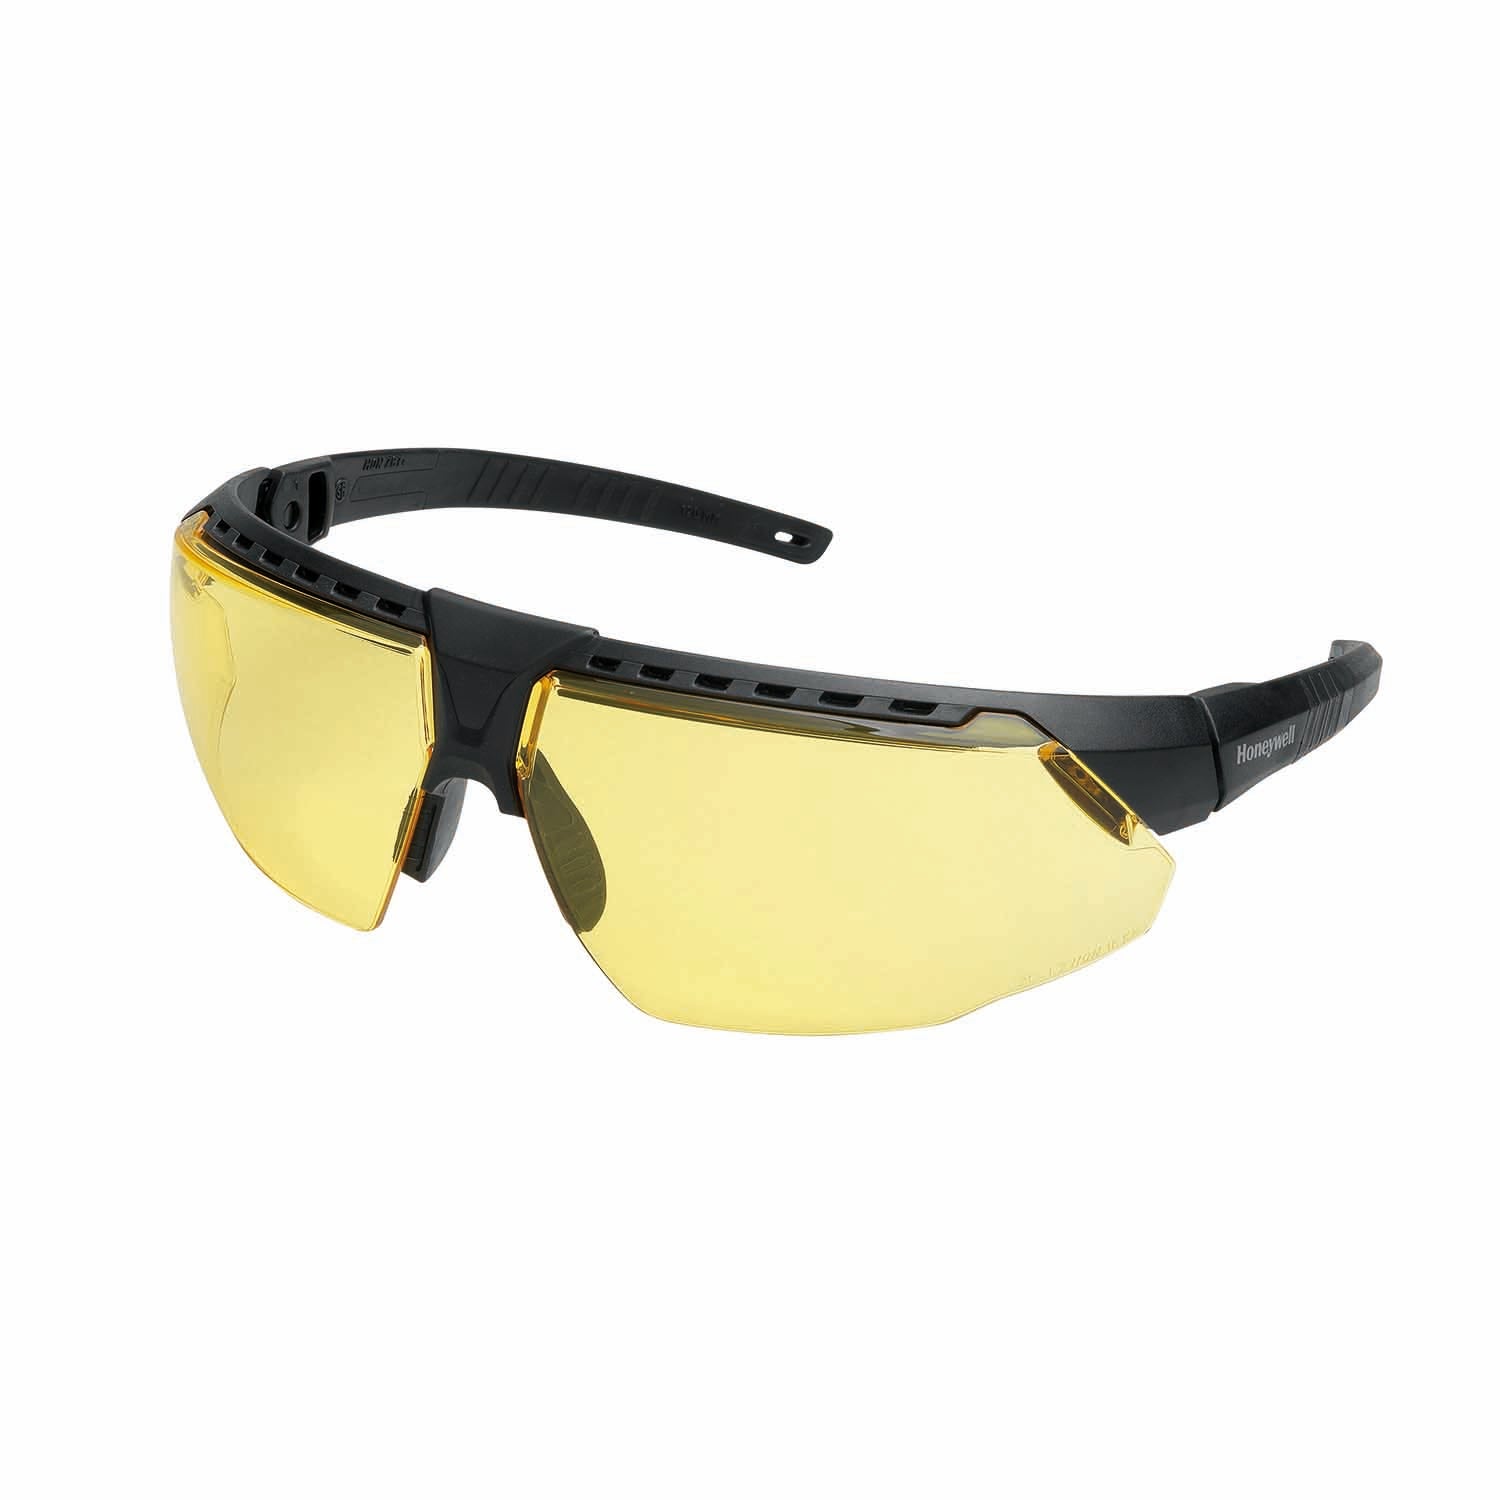 Honeywell AVATAR Safety Glasses Black Frame Amber Lens